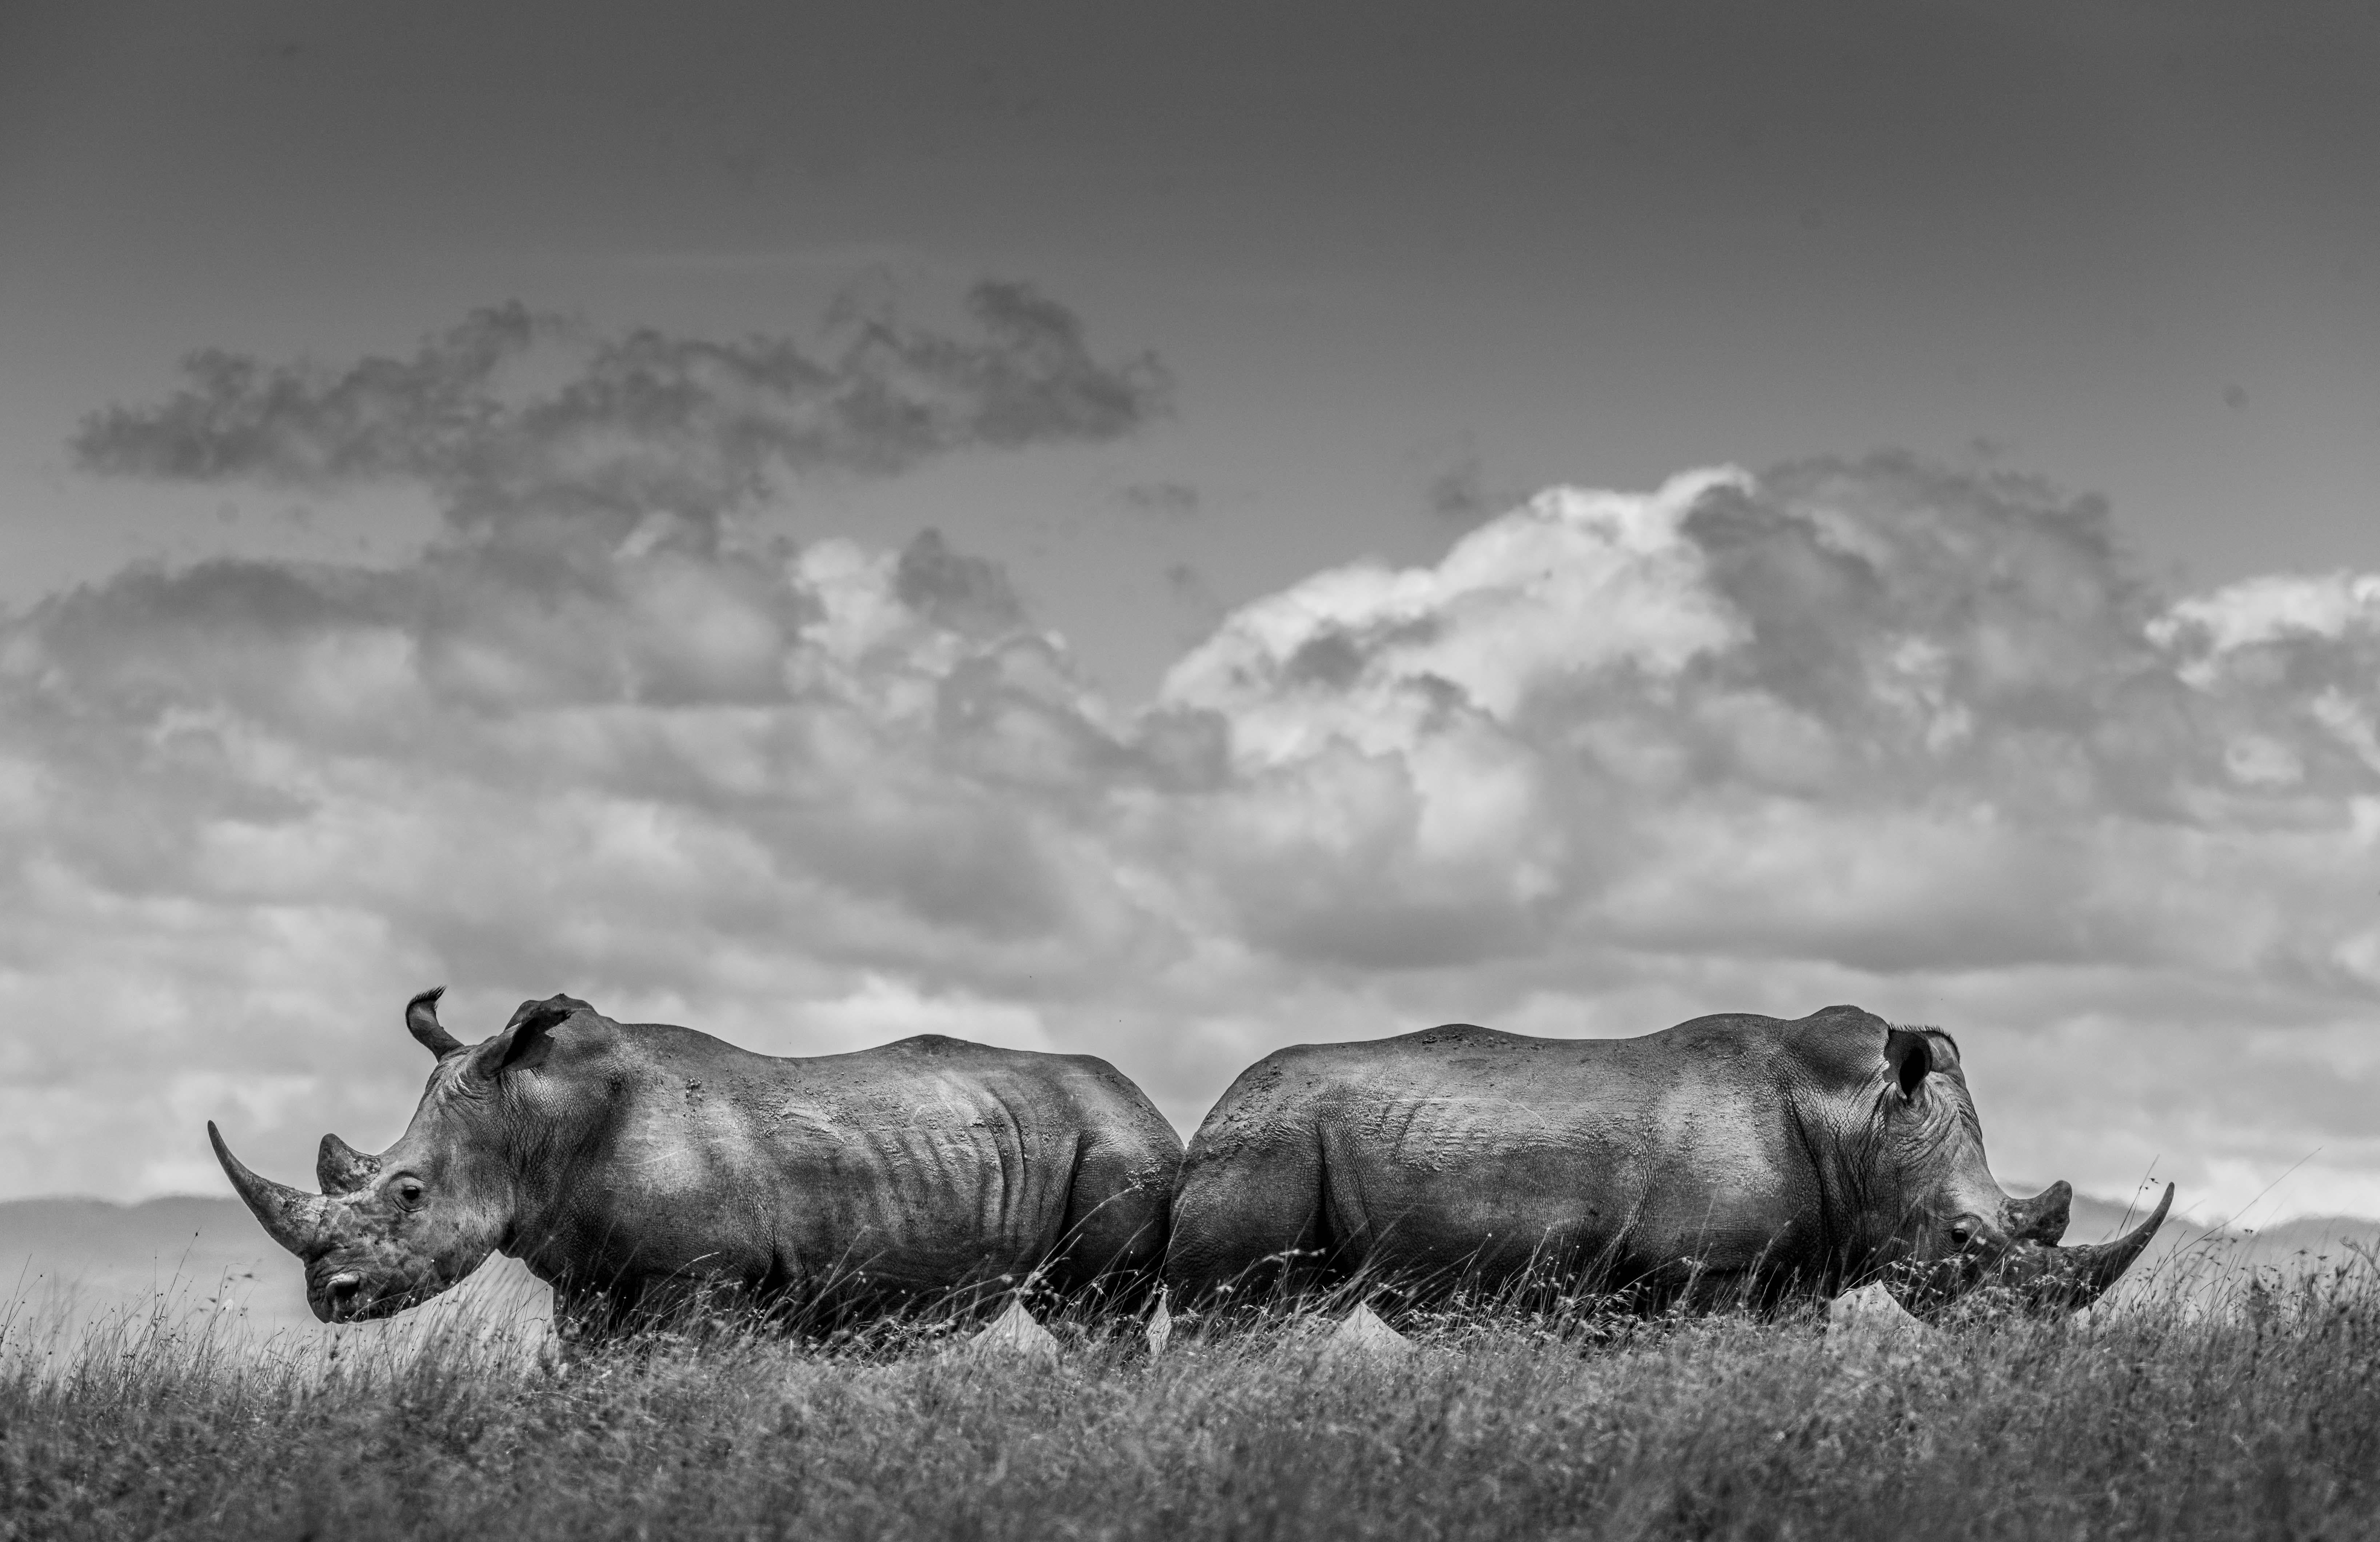 "In der Vergangenheit war ich mit meinen Rhino-Fotografien überwiegend unzufrieden, da ich Schwierigkeiten hatte, saubere Hintergründe mit viel Himmel zu erzielen, die ich in meinem Ansatz so wichtig finde. Dies macht Breitmaulnashörner oft zu